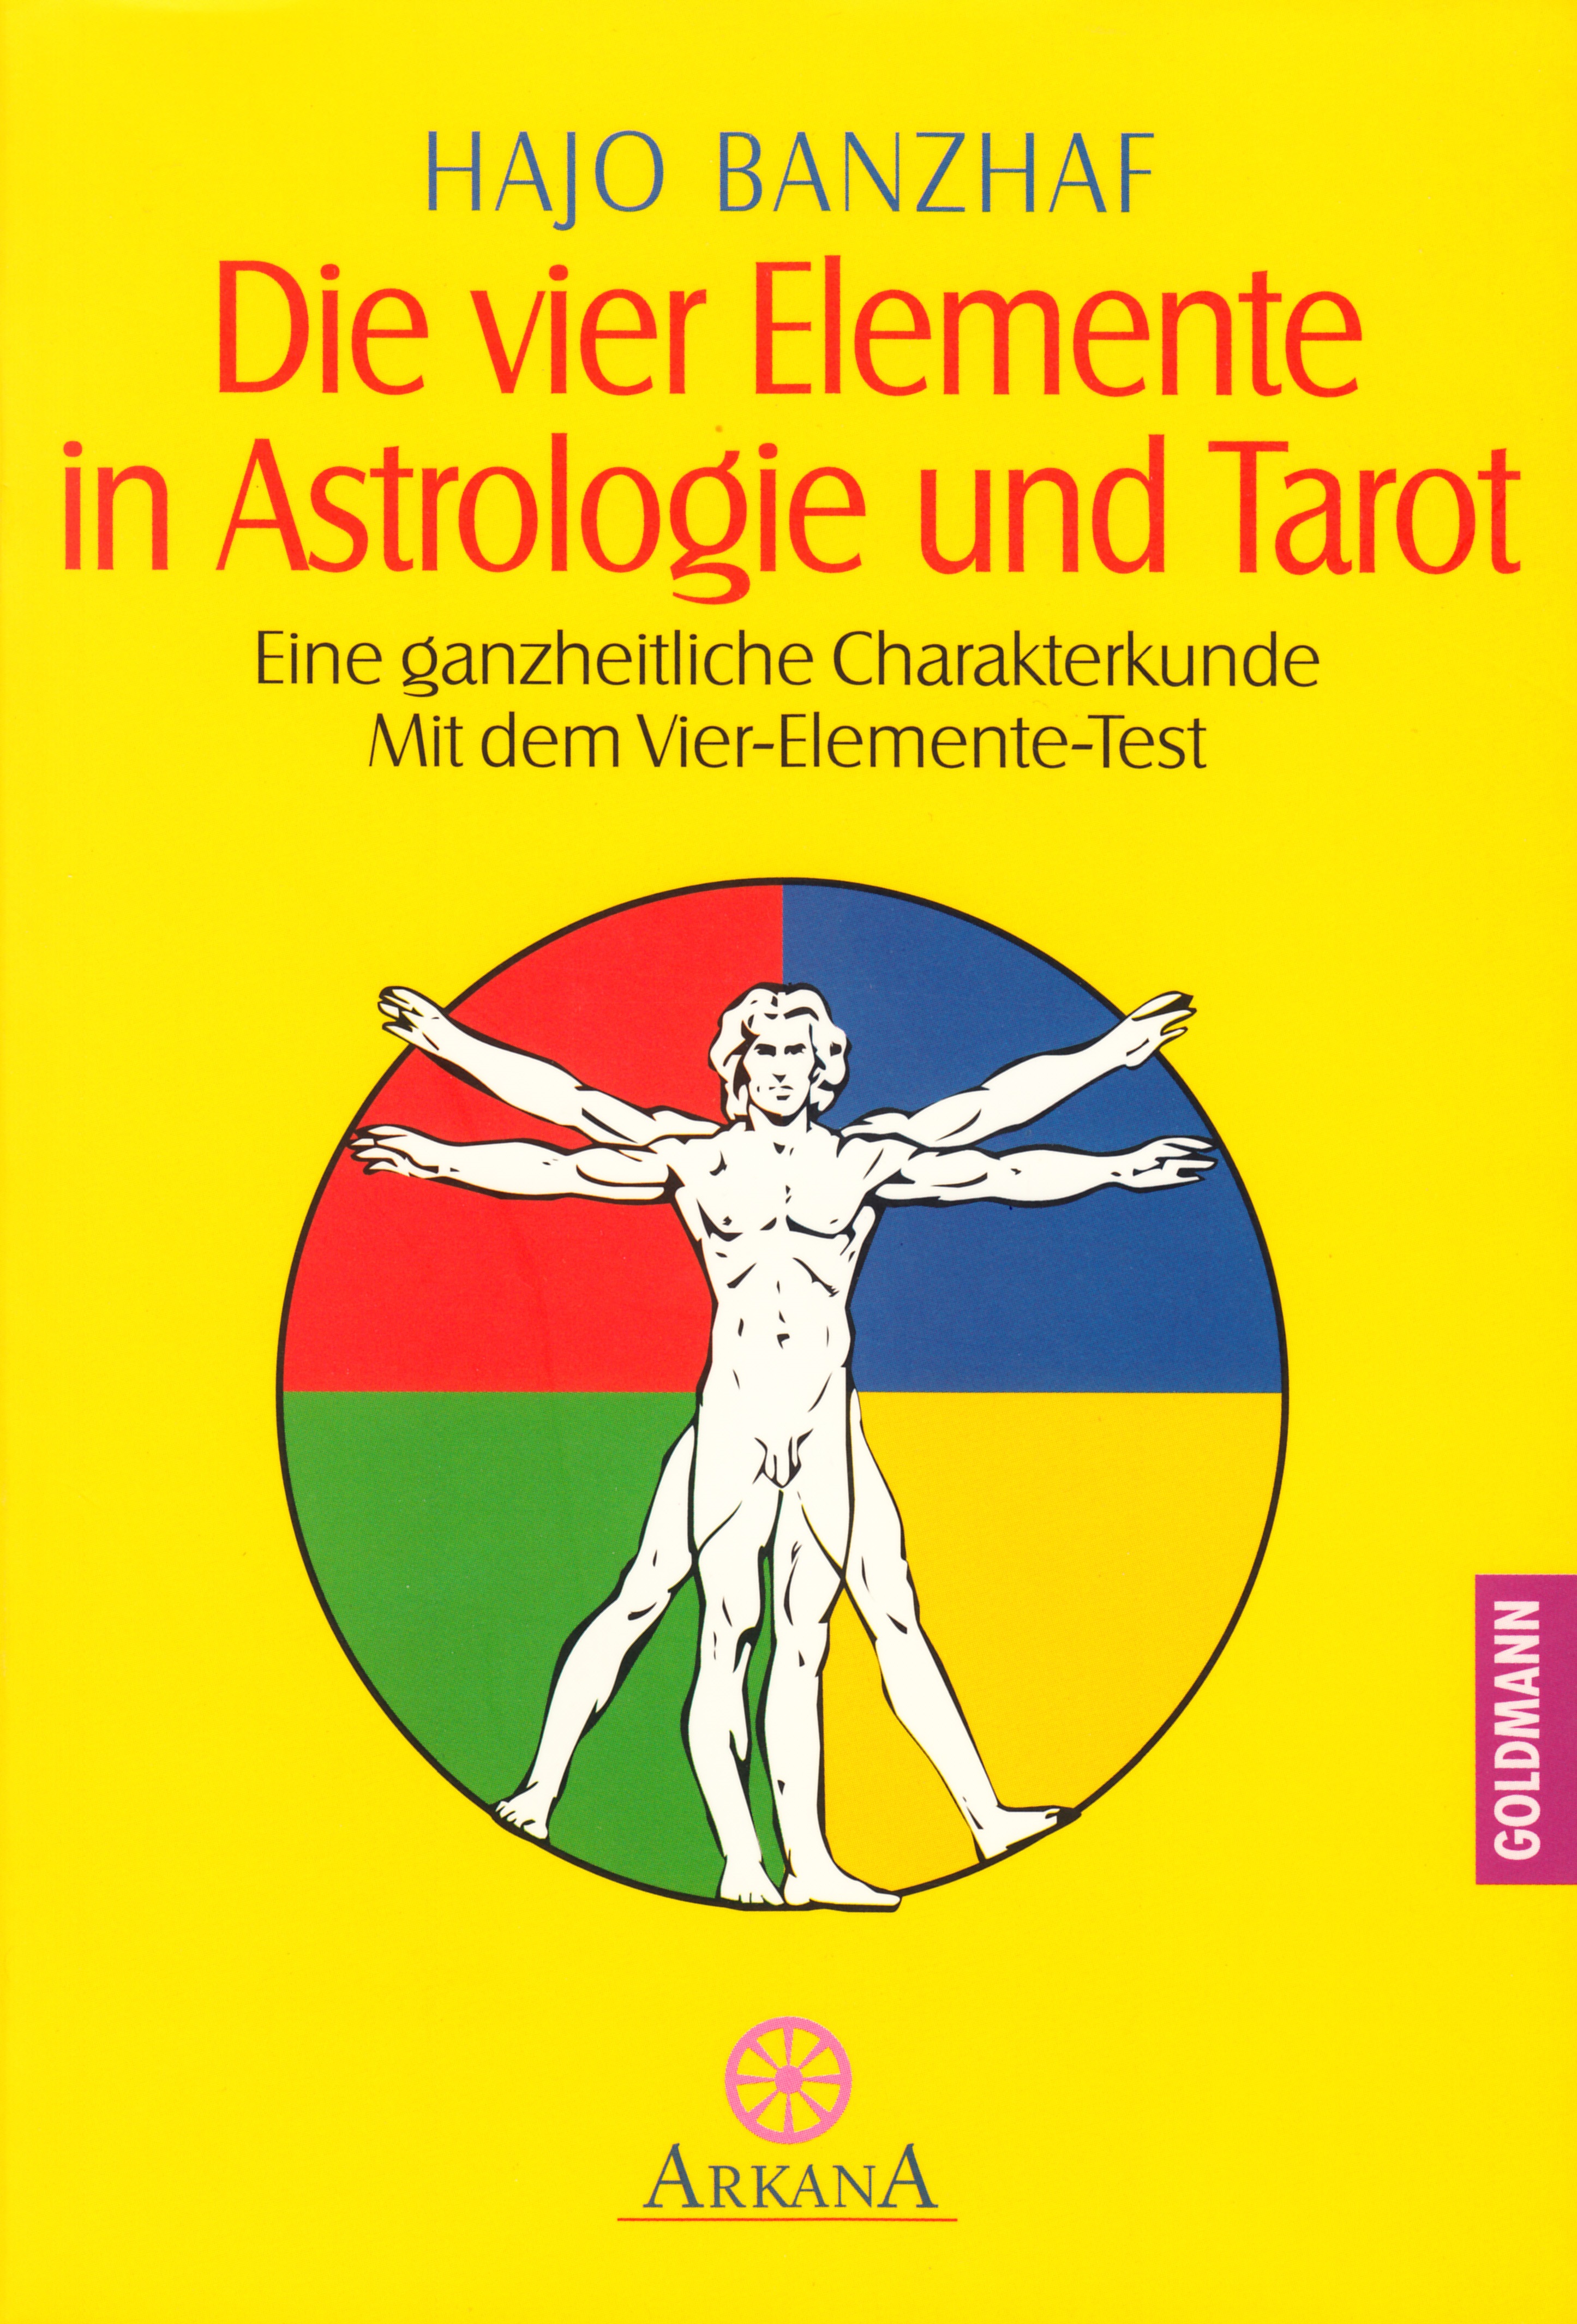 Die vier Elemente in Astrologie und Tarot